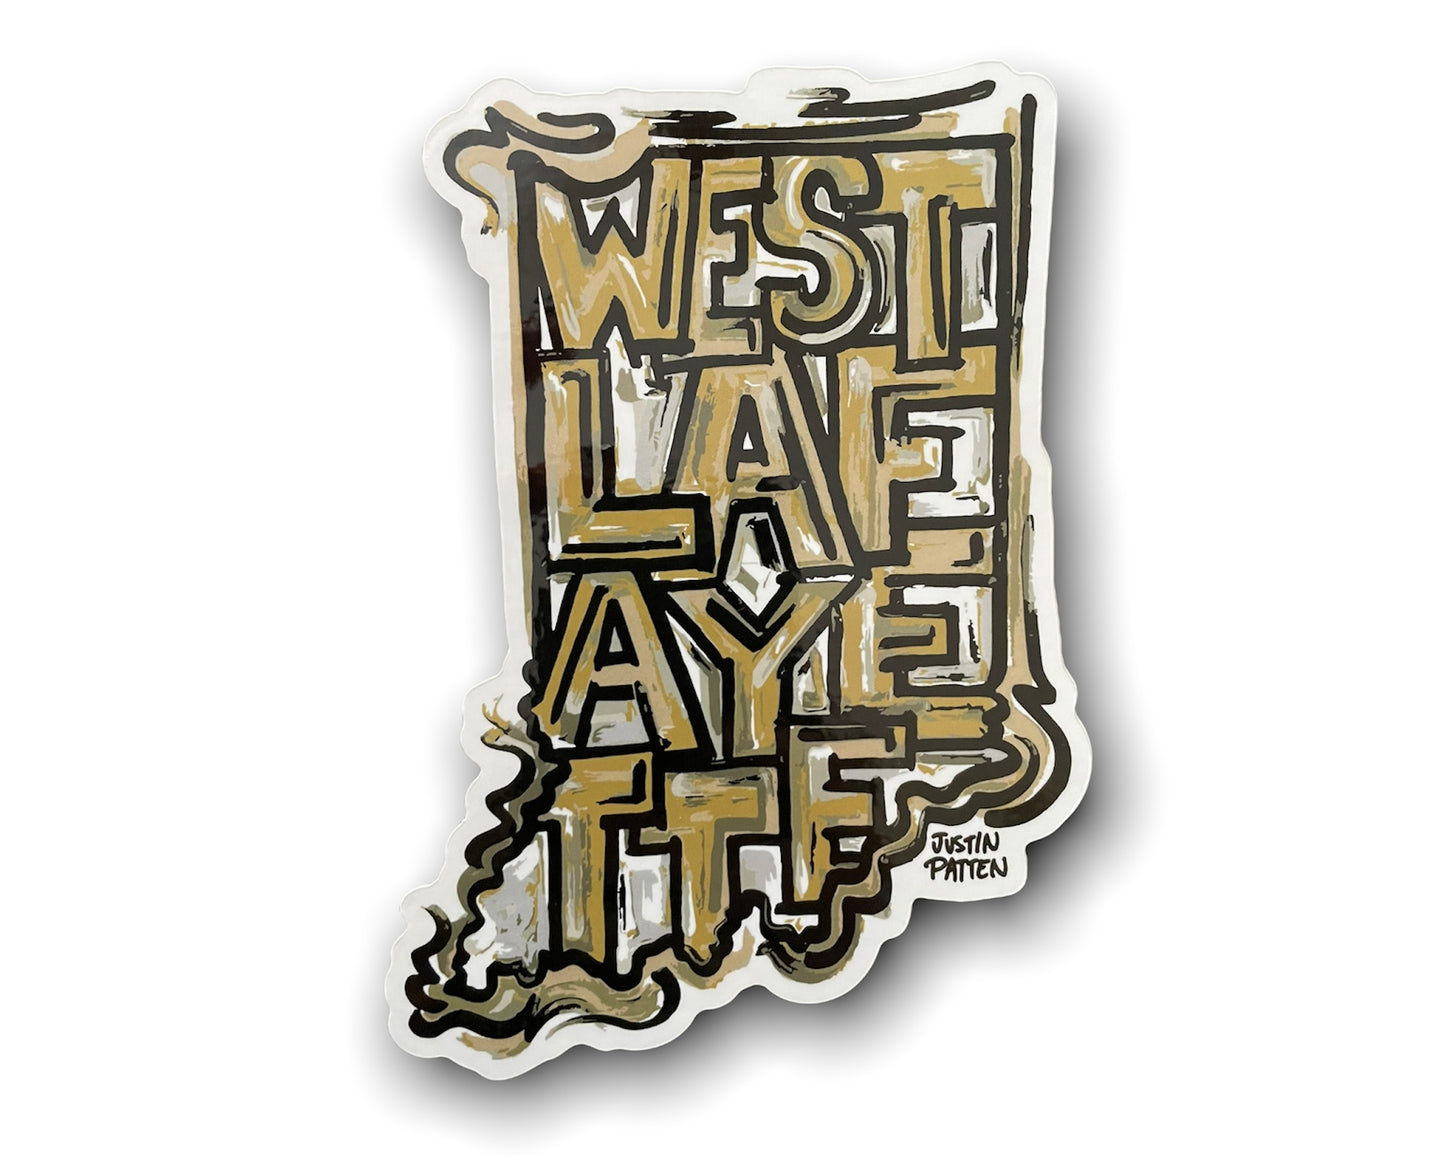 Purdue West Lafayette Indiana Vinyl Sticker by Justin Patten